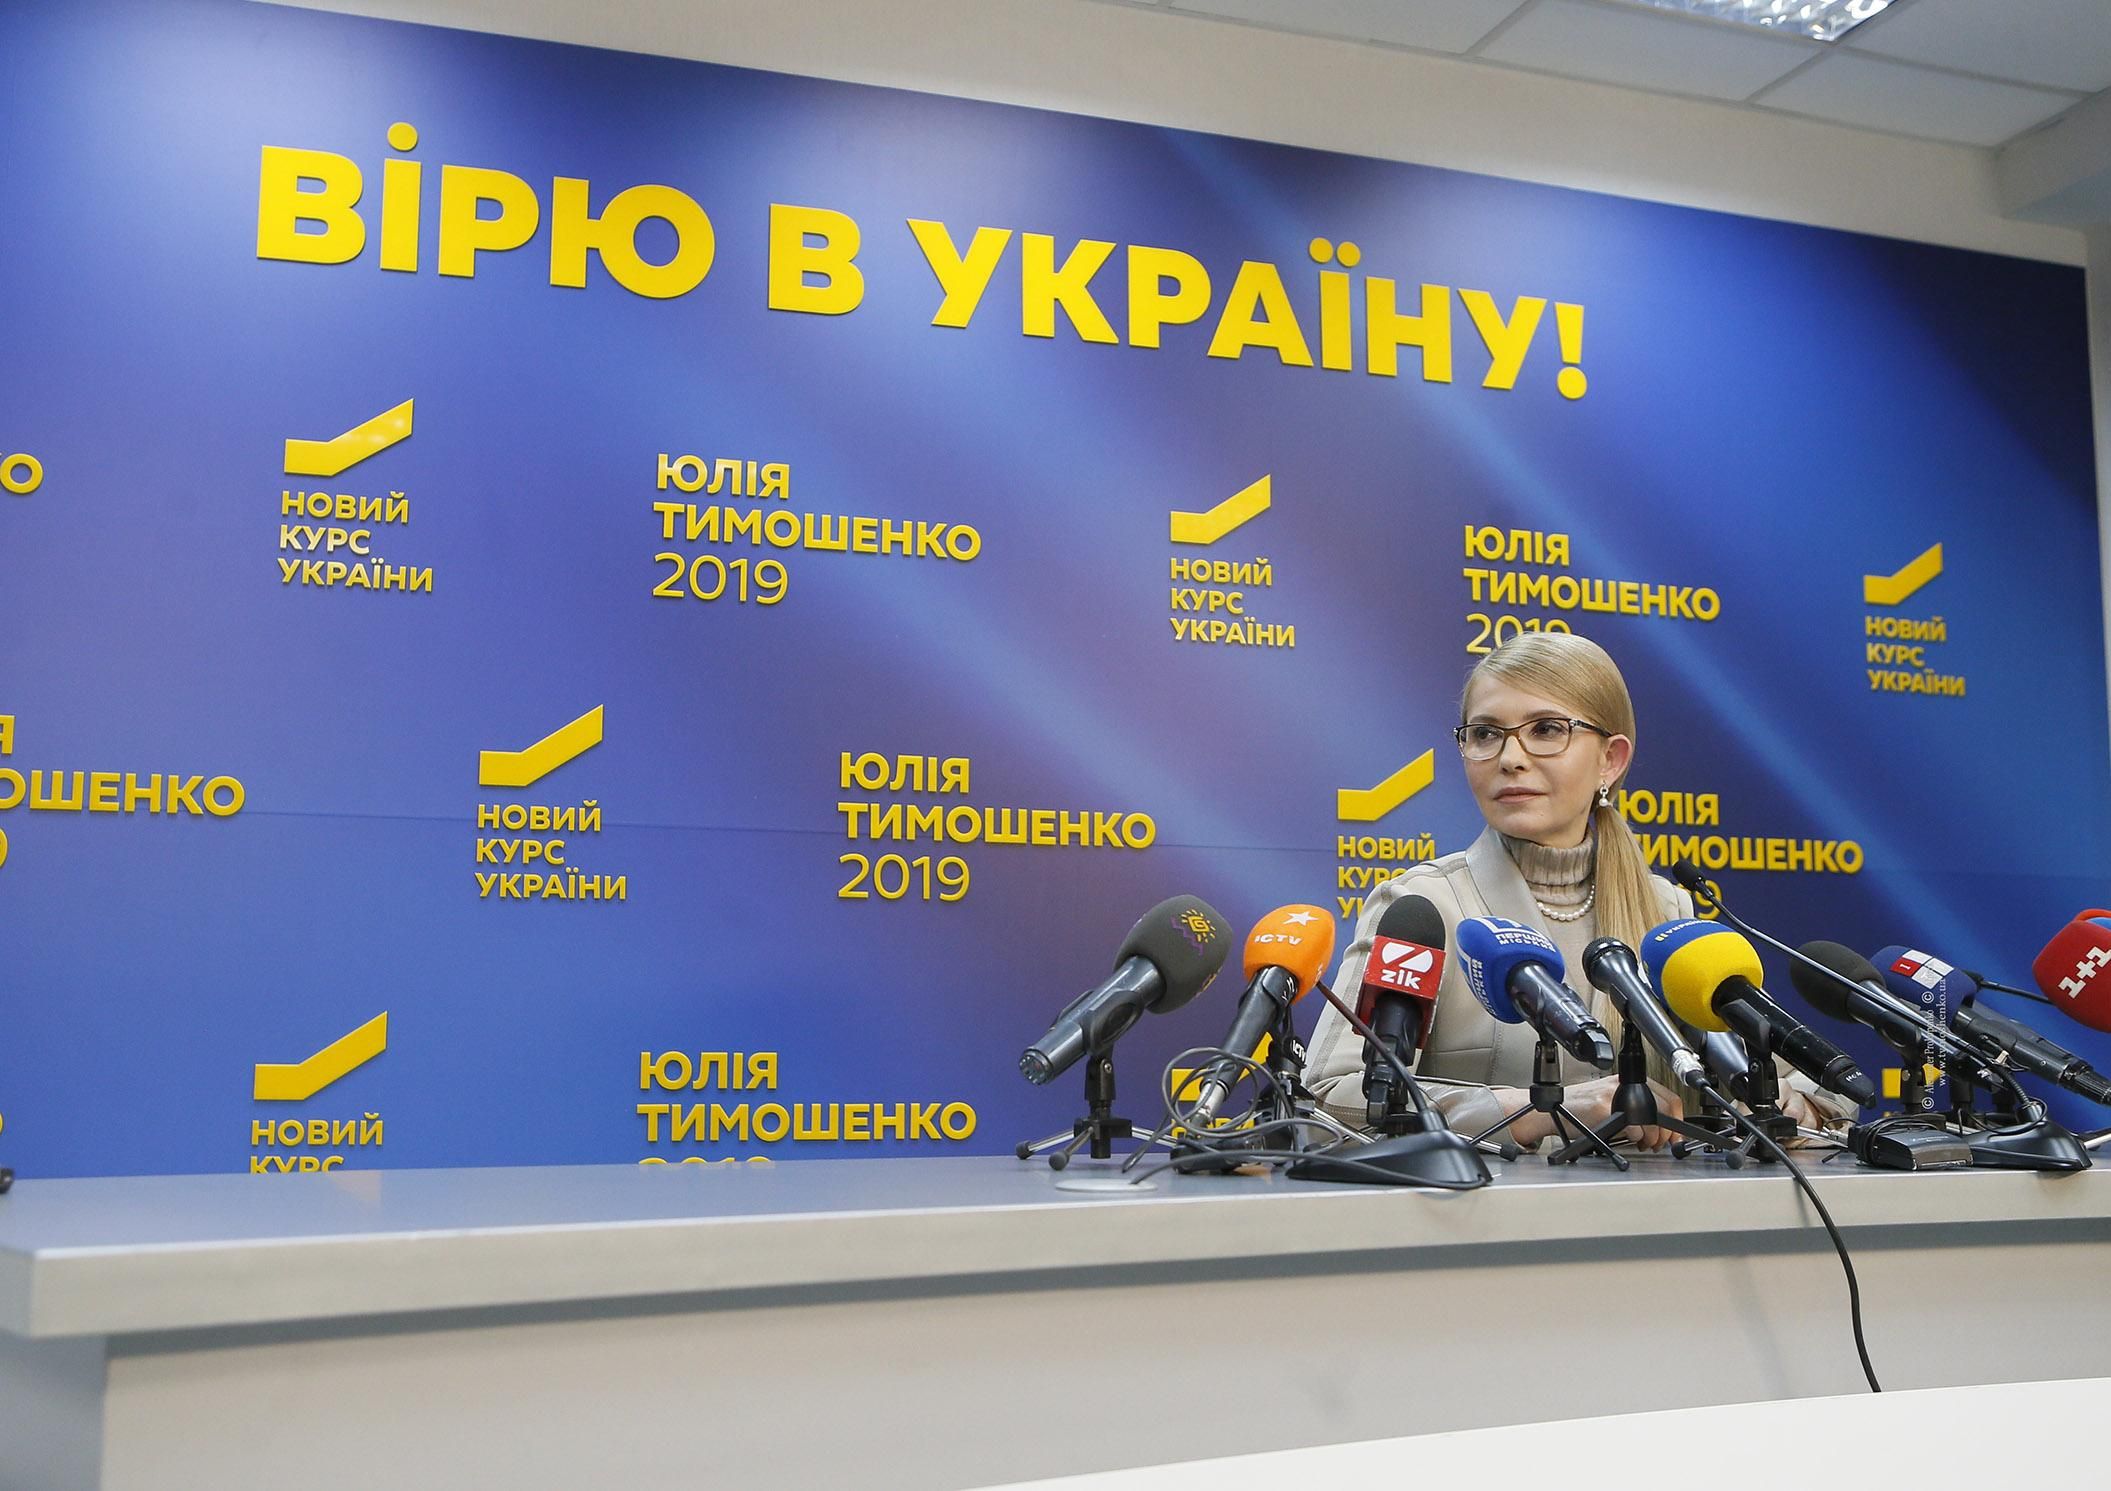 Наша победа будет честной, – Юлия Тимошенко